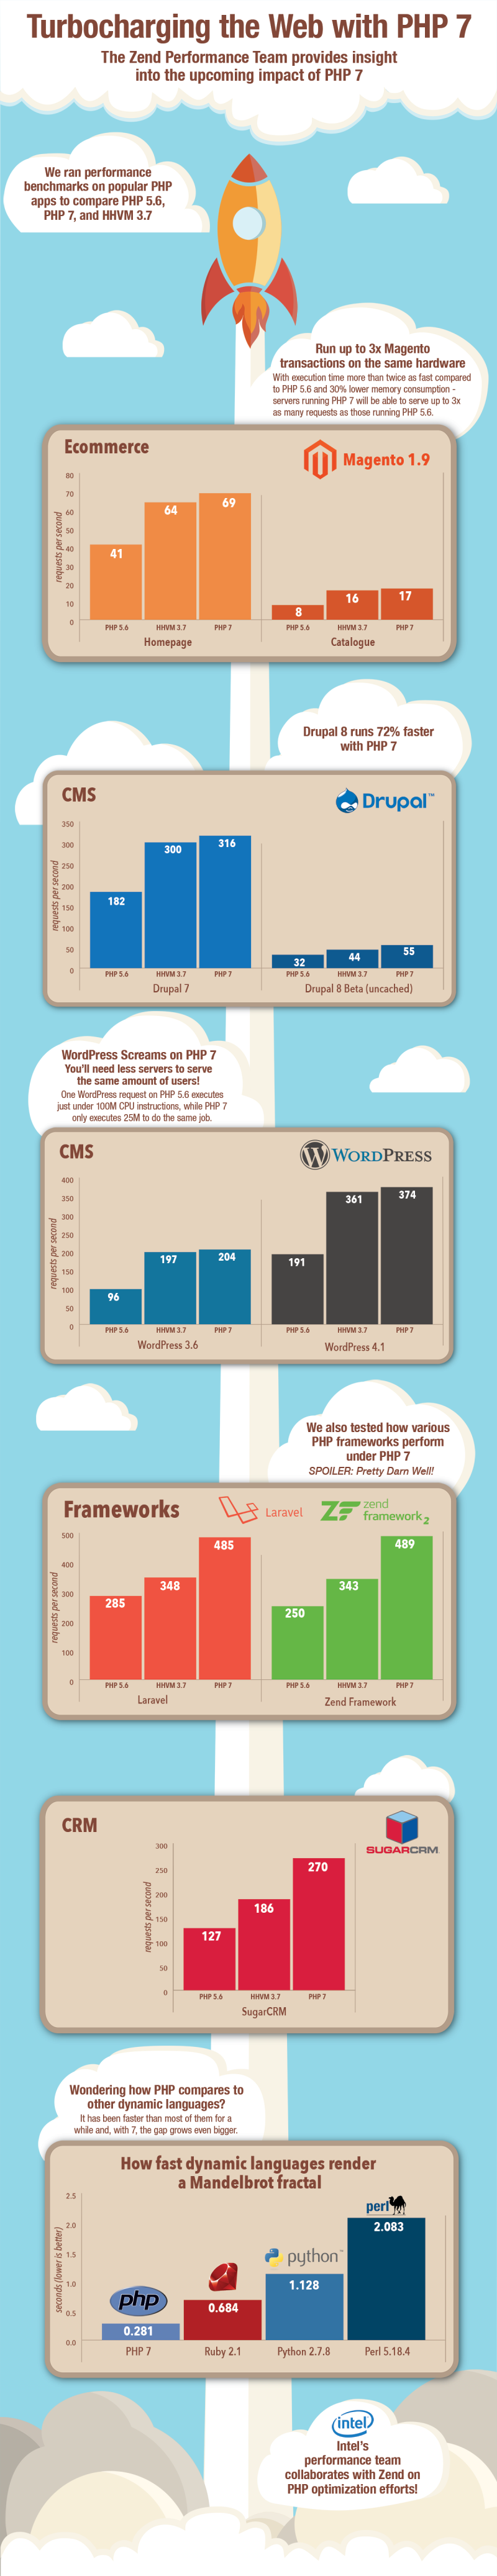 php7-инфографика